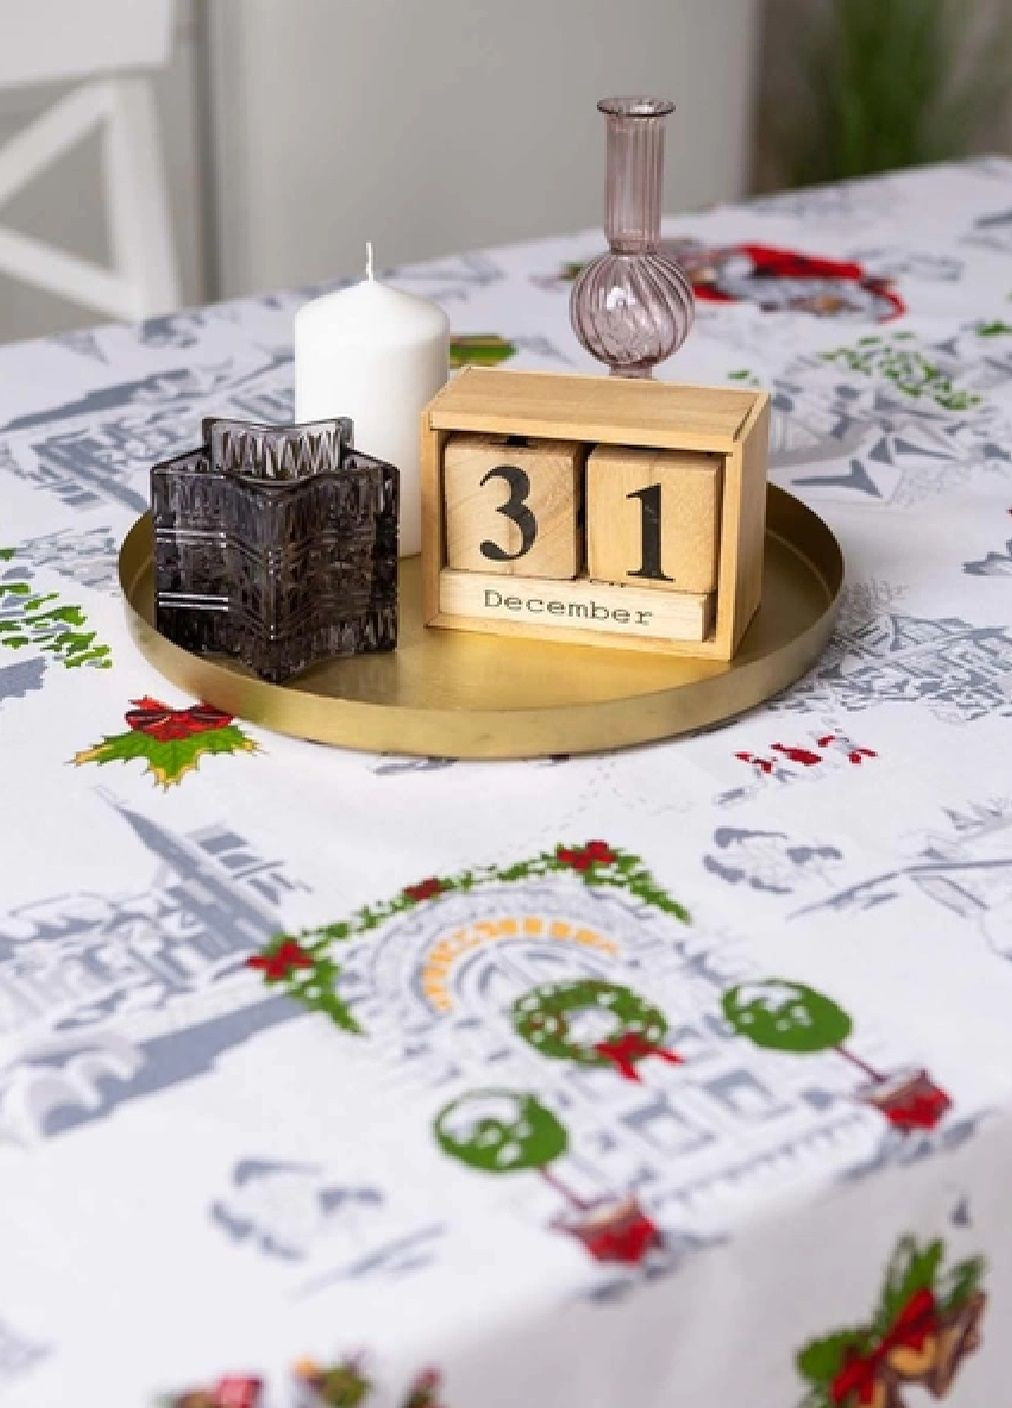 Новорічна святкова лляна бавовняна скатертина накидка на обідній стіл з візерунком 150х180 см (475708-Prob) Санта Unbranded (270090523)